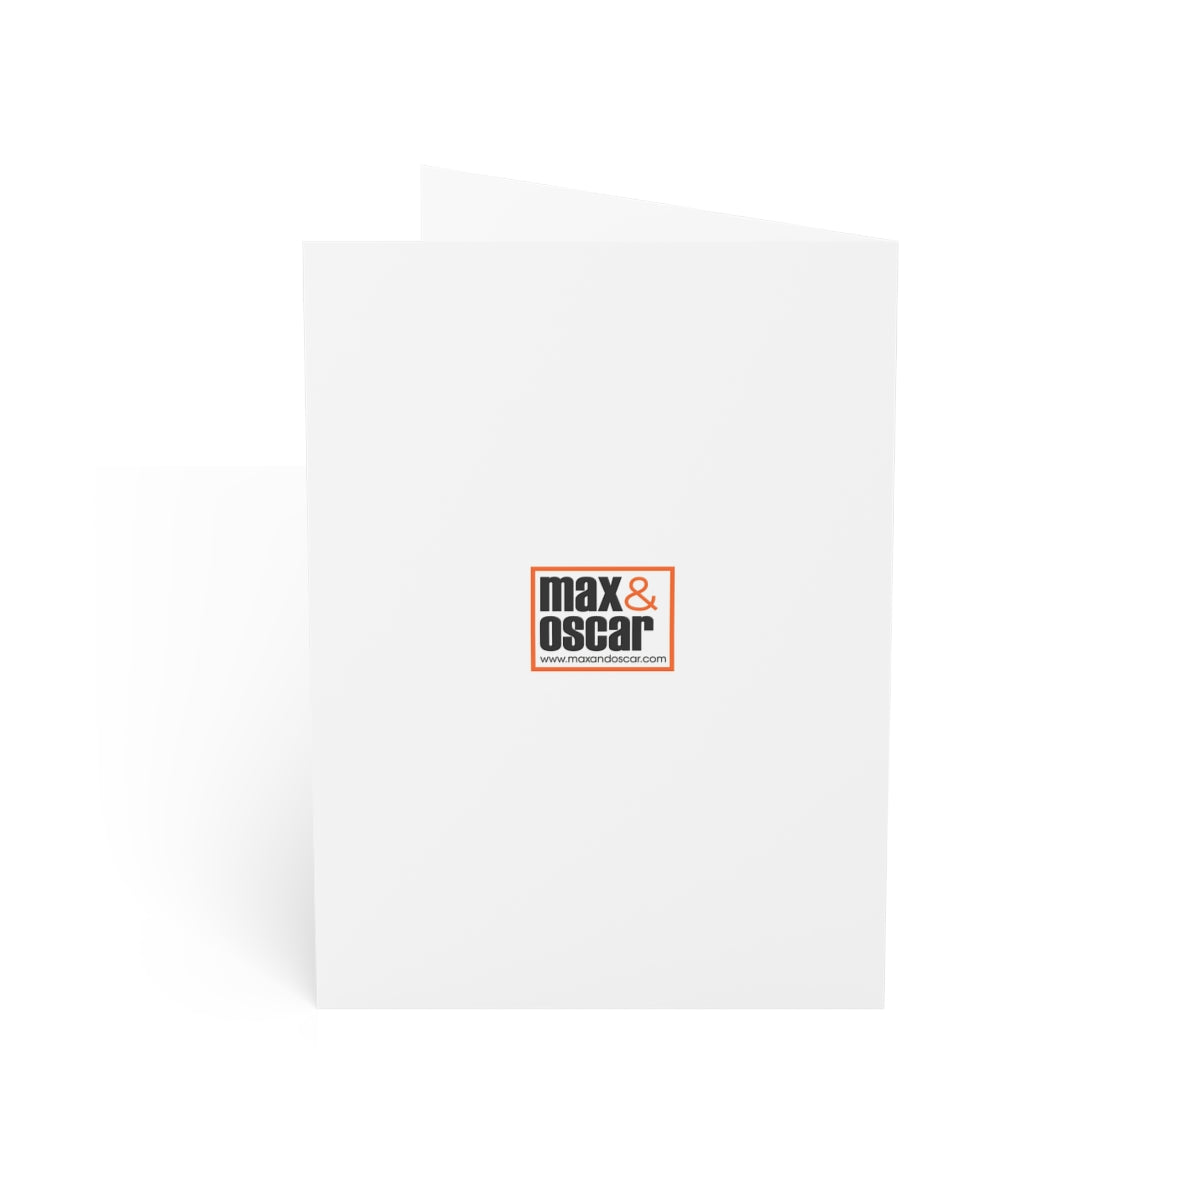 Sonoran Desert Folded Matte Notecards + Envelopes (10pcs)